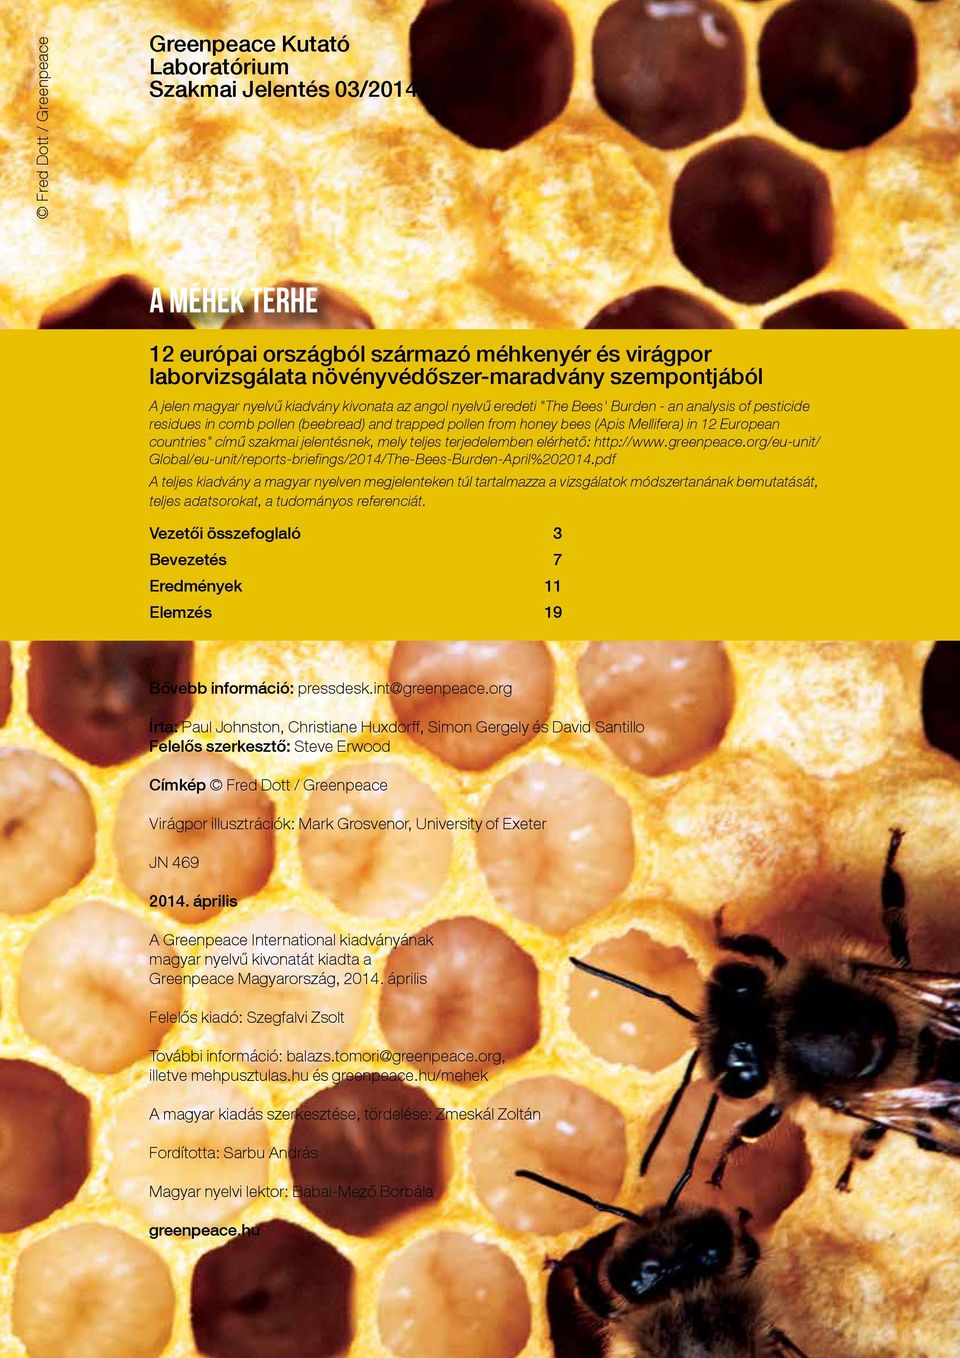 12 European countries" című szakmai jelentésnek, mely teljes terjedelemben elérhető: http://www.greenpeace.org/eu-unit/ Global/eu-unit/reports-briefings/2014/The-Bees-Burden-April%202014.